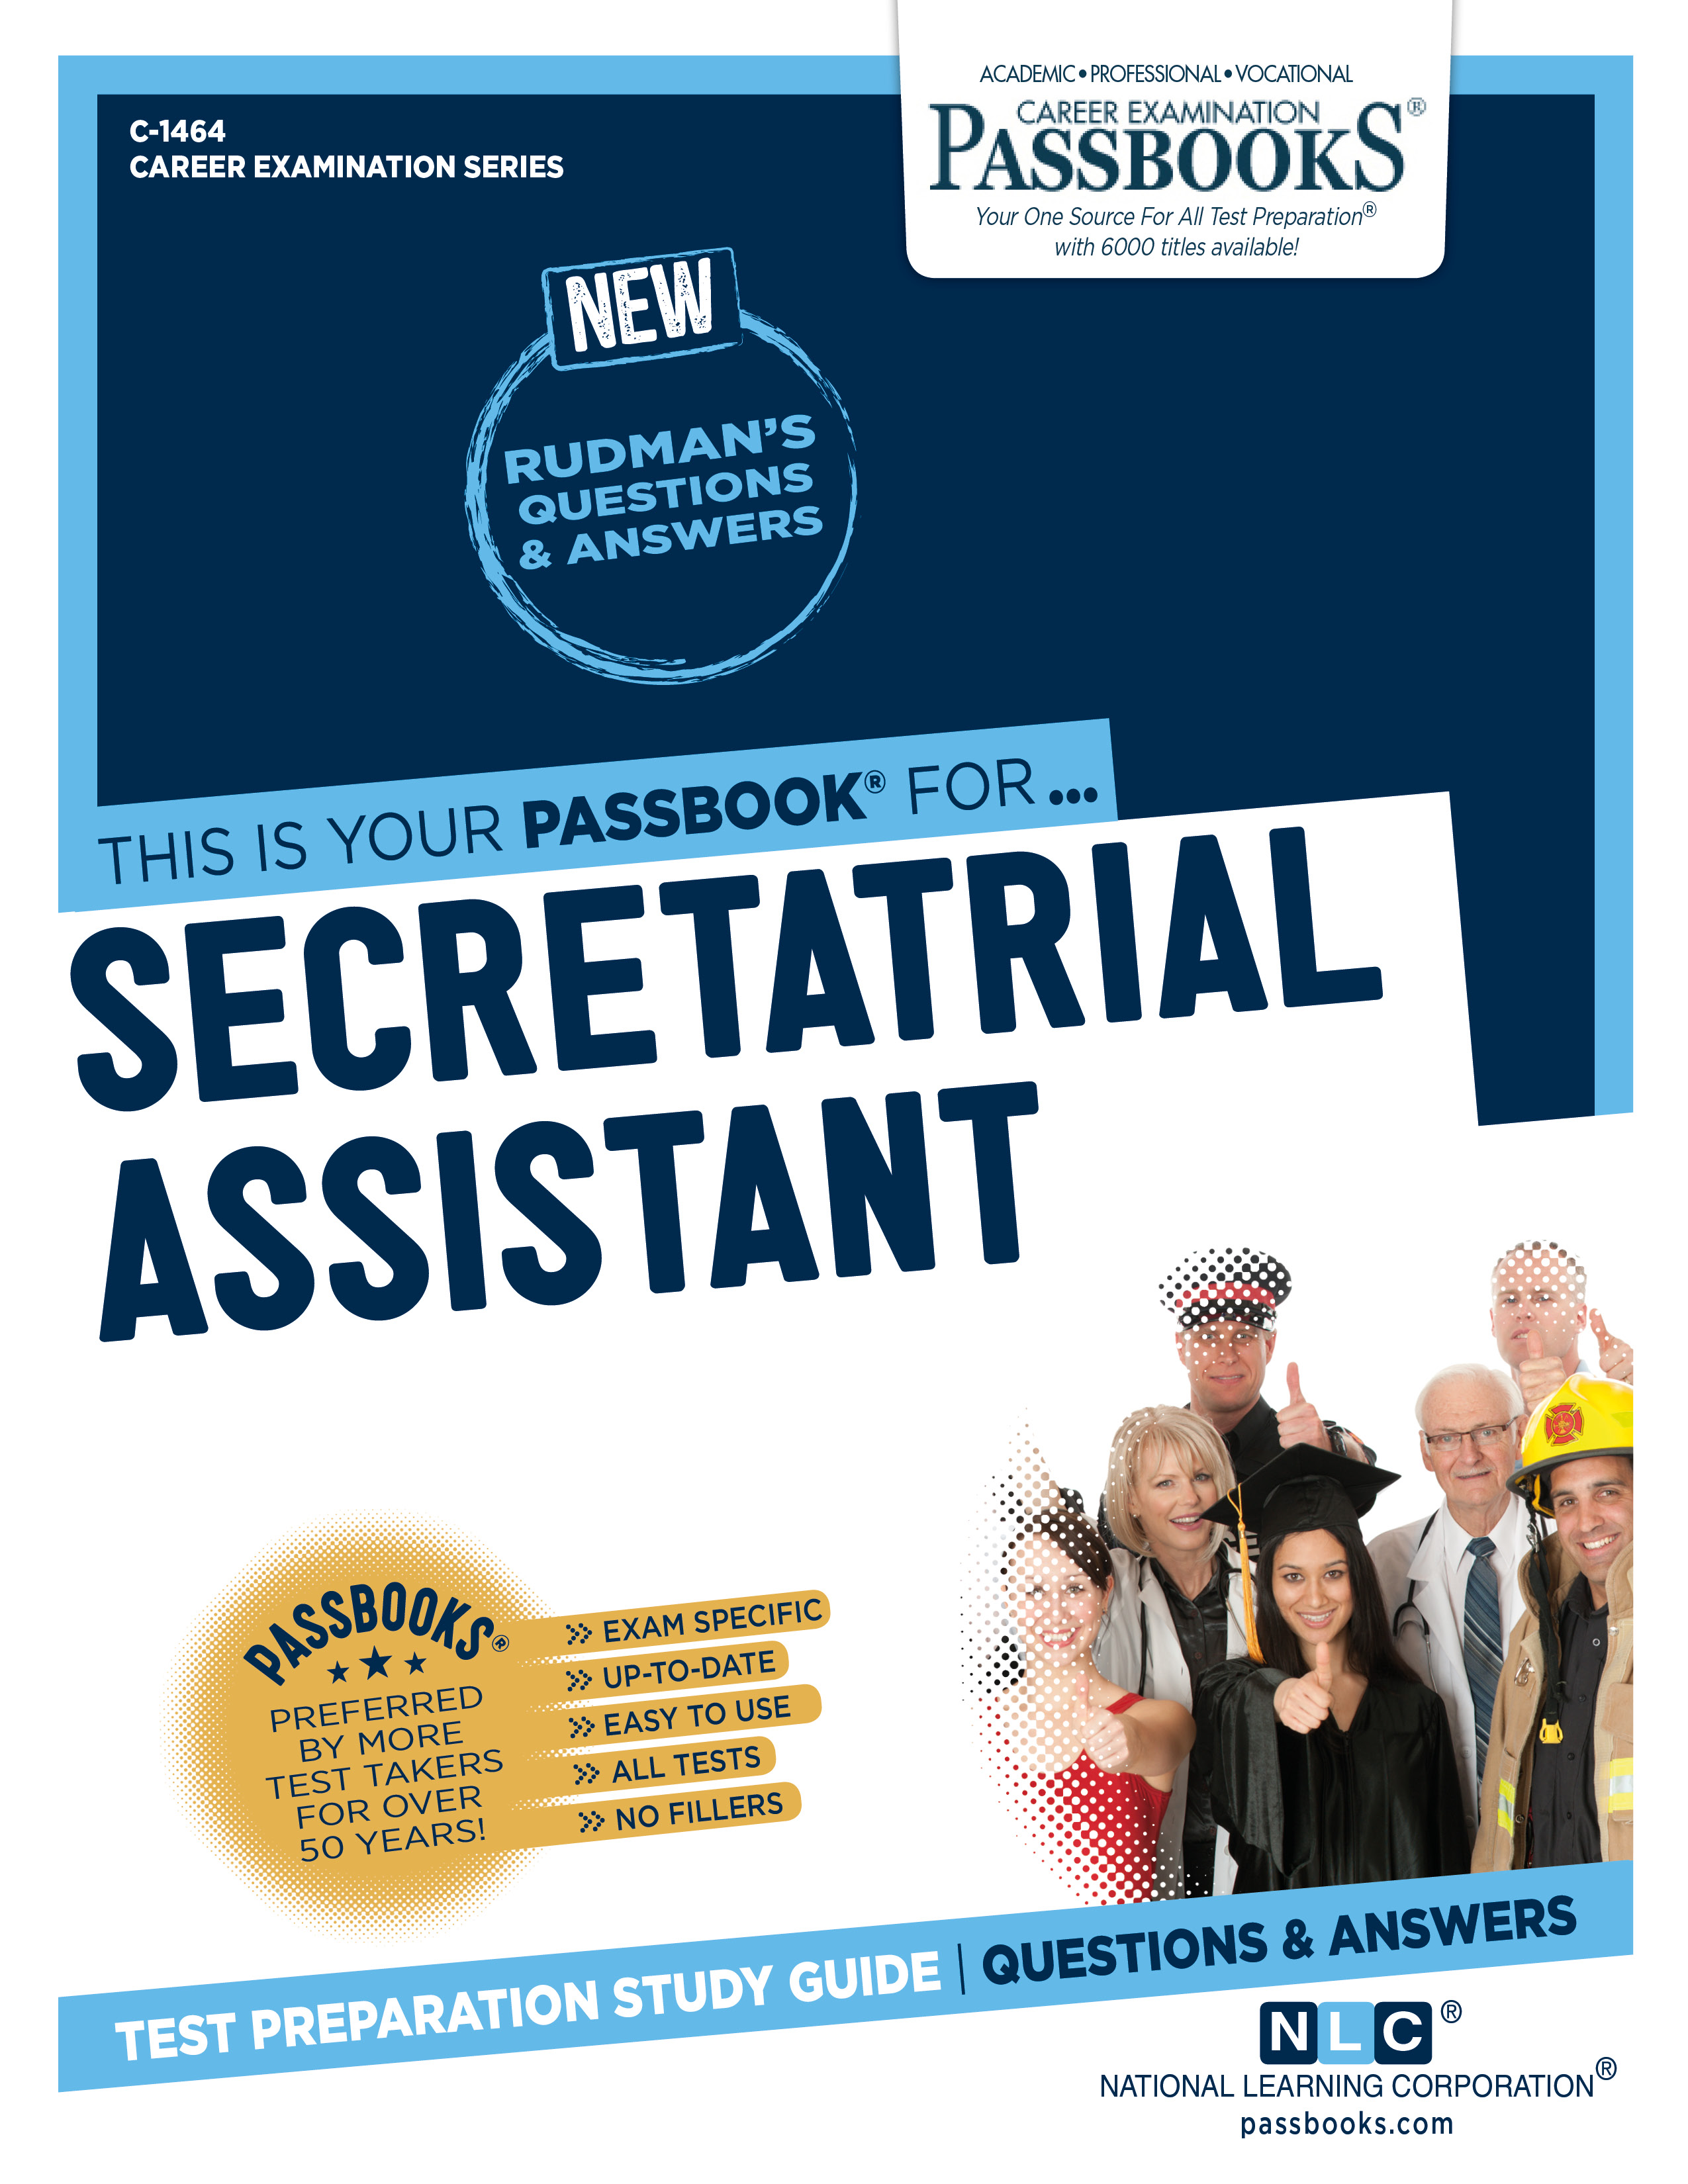 Secretarial Assistant